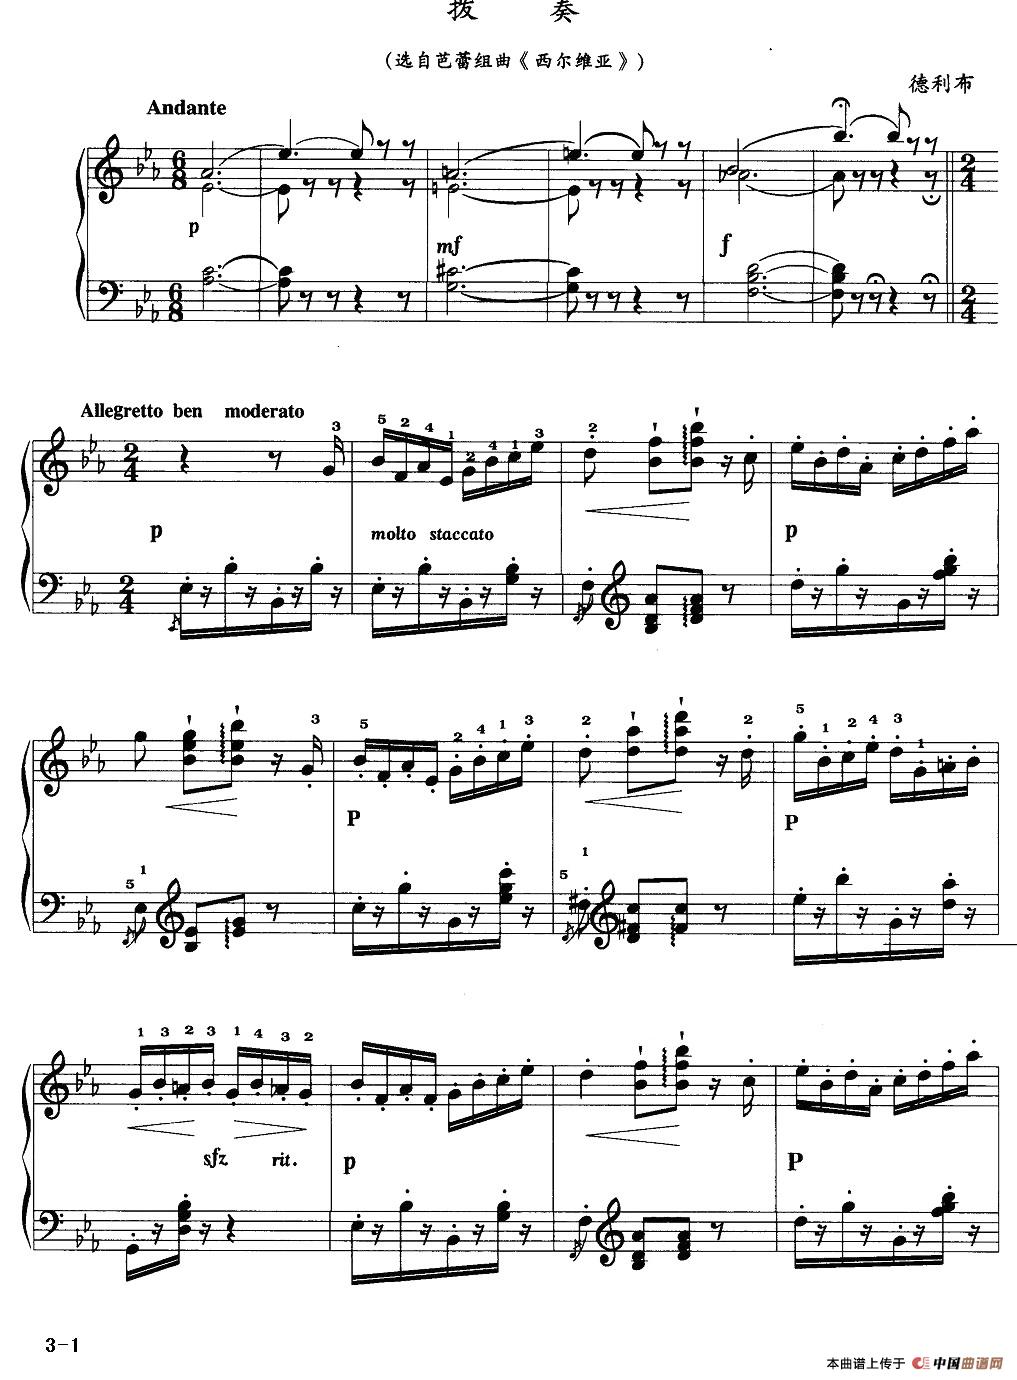 《拨奏》钢琴曲谱图分享